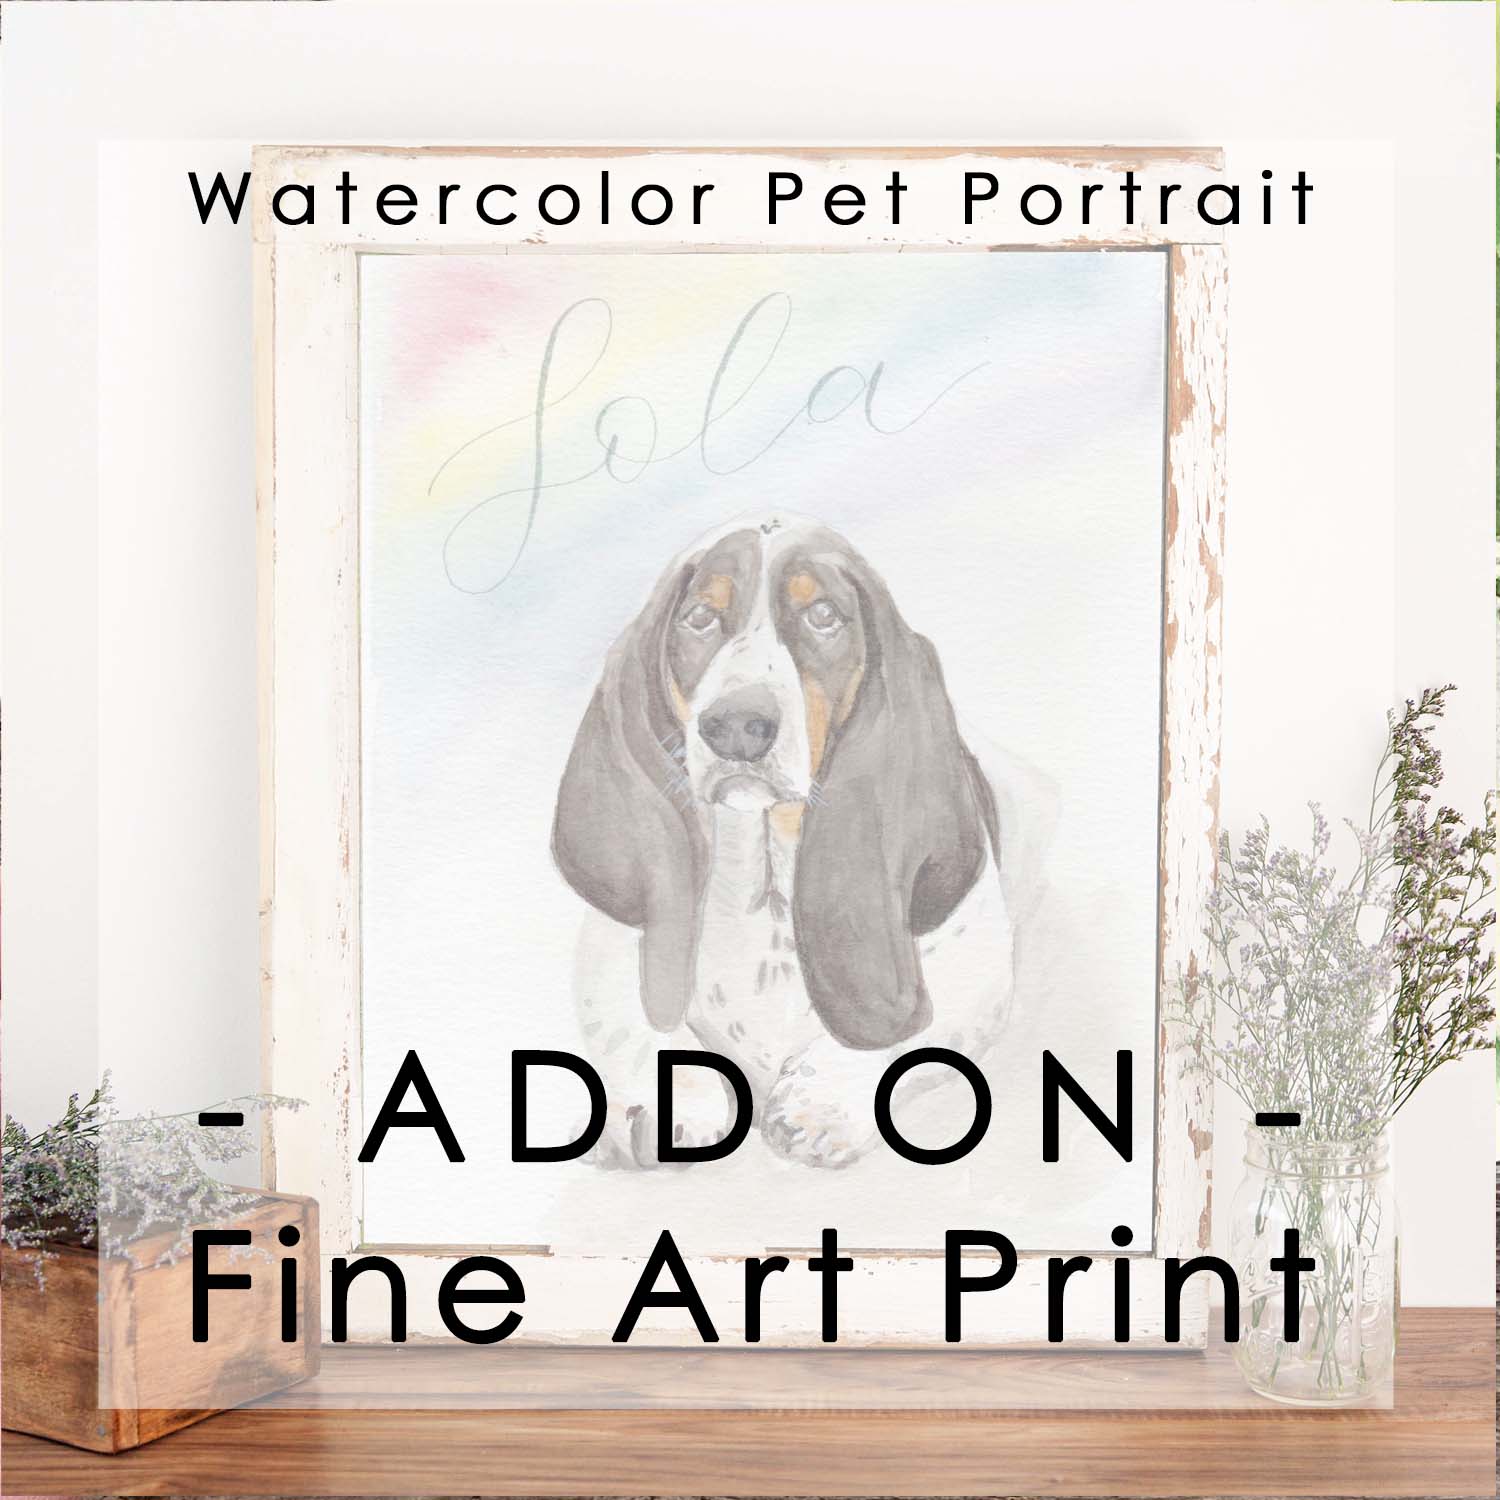 Watercolor Pet Portrait - ADD ON - Fine Art Print